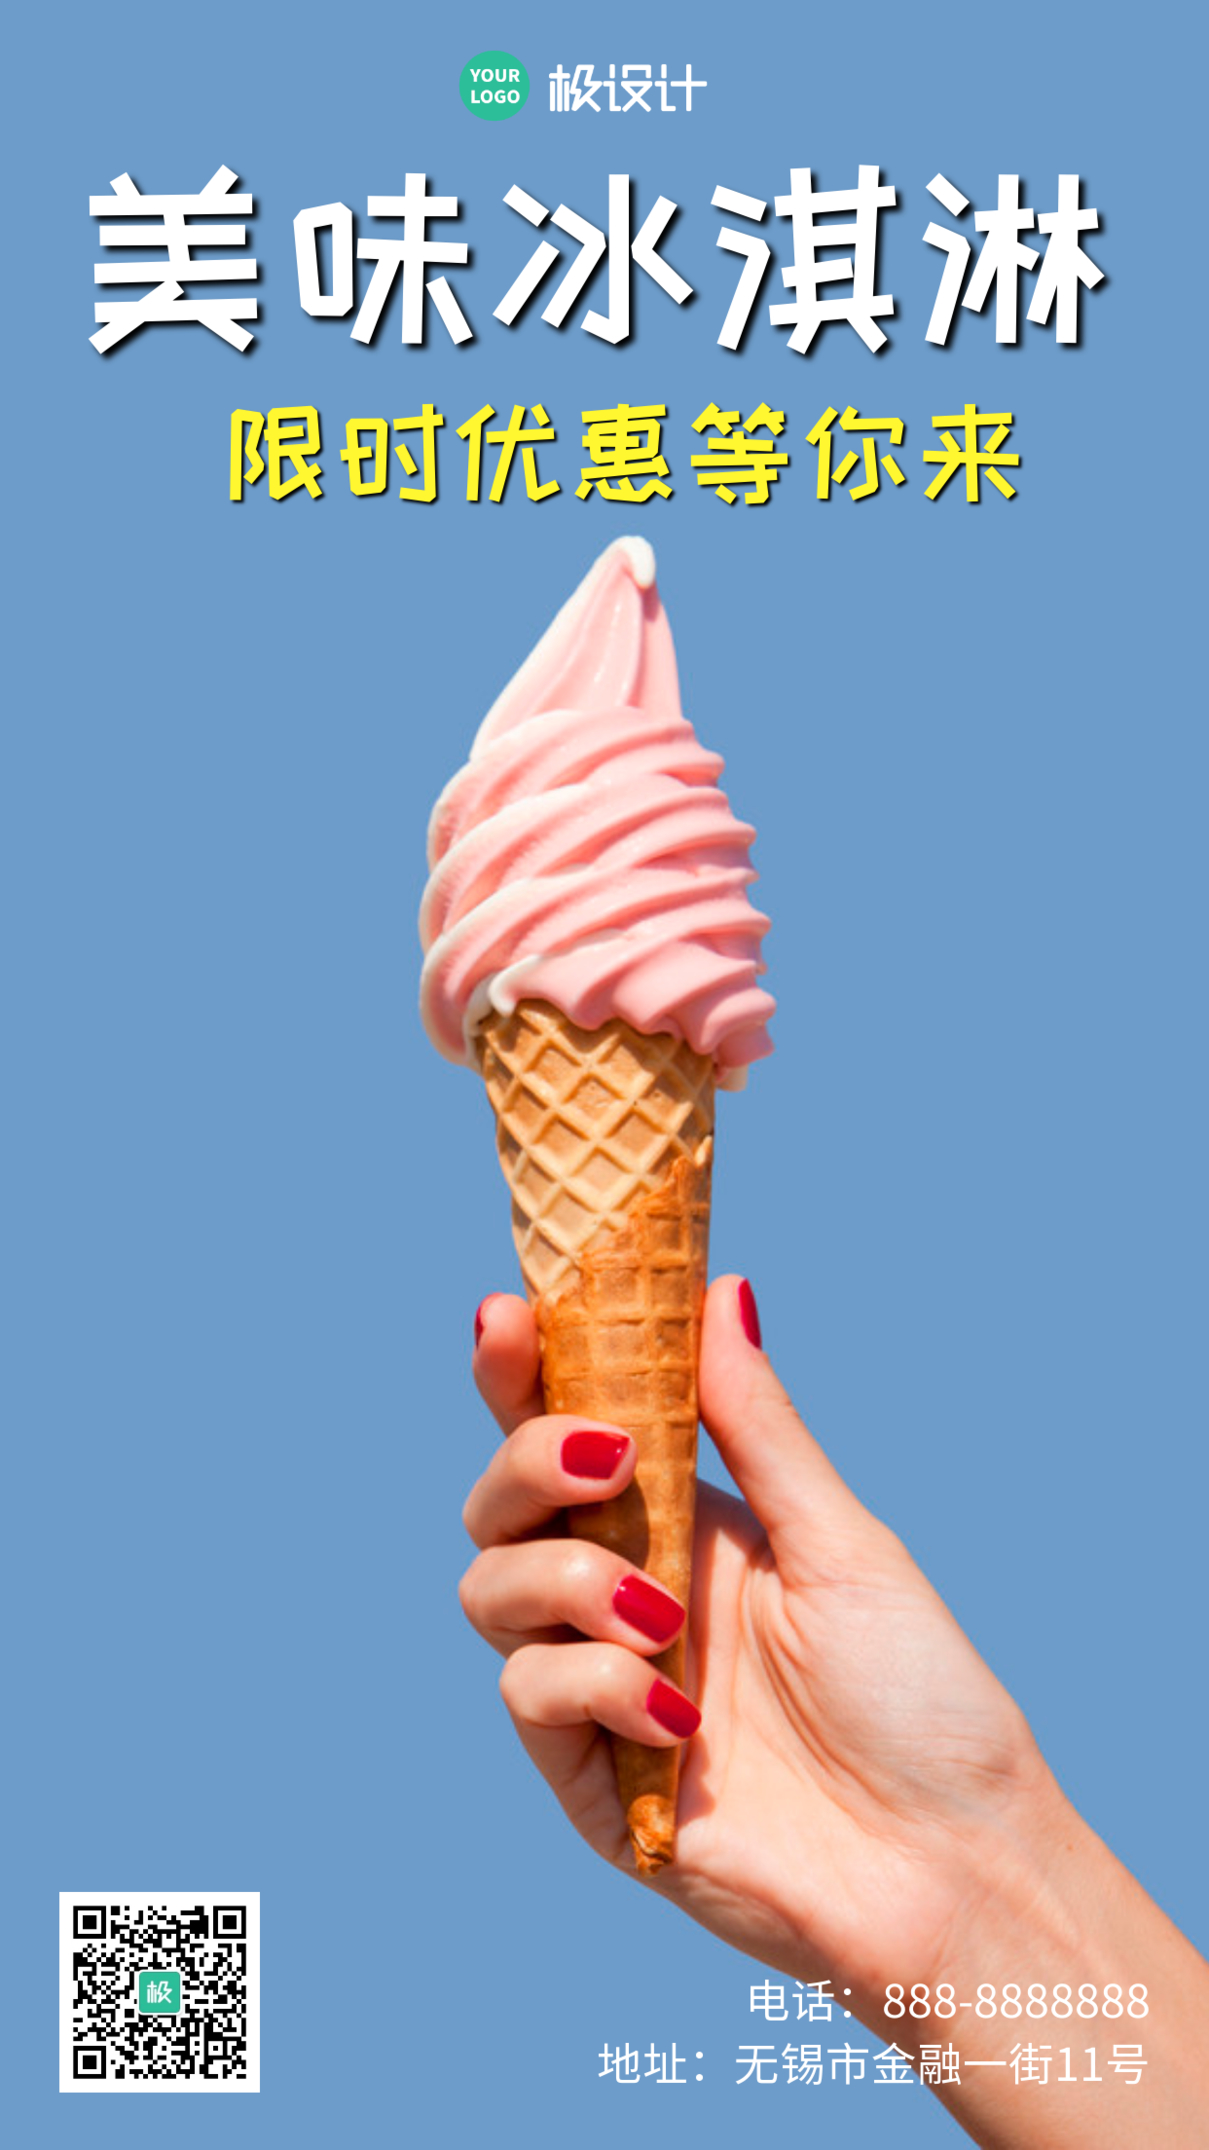 简约风格美味冰淇淋宣传营销手机海报